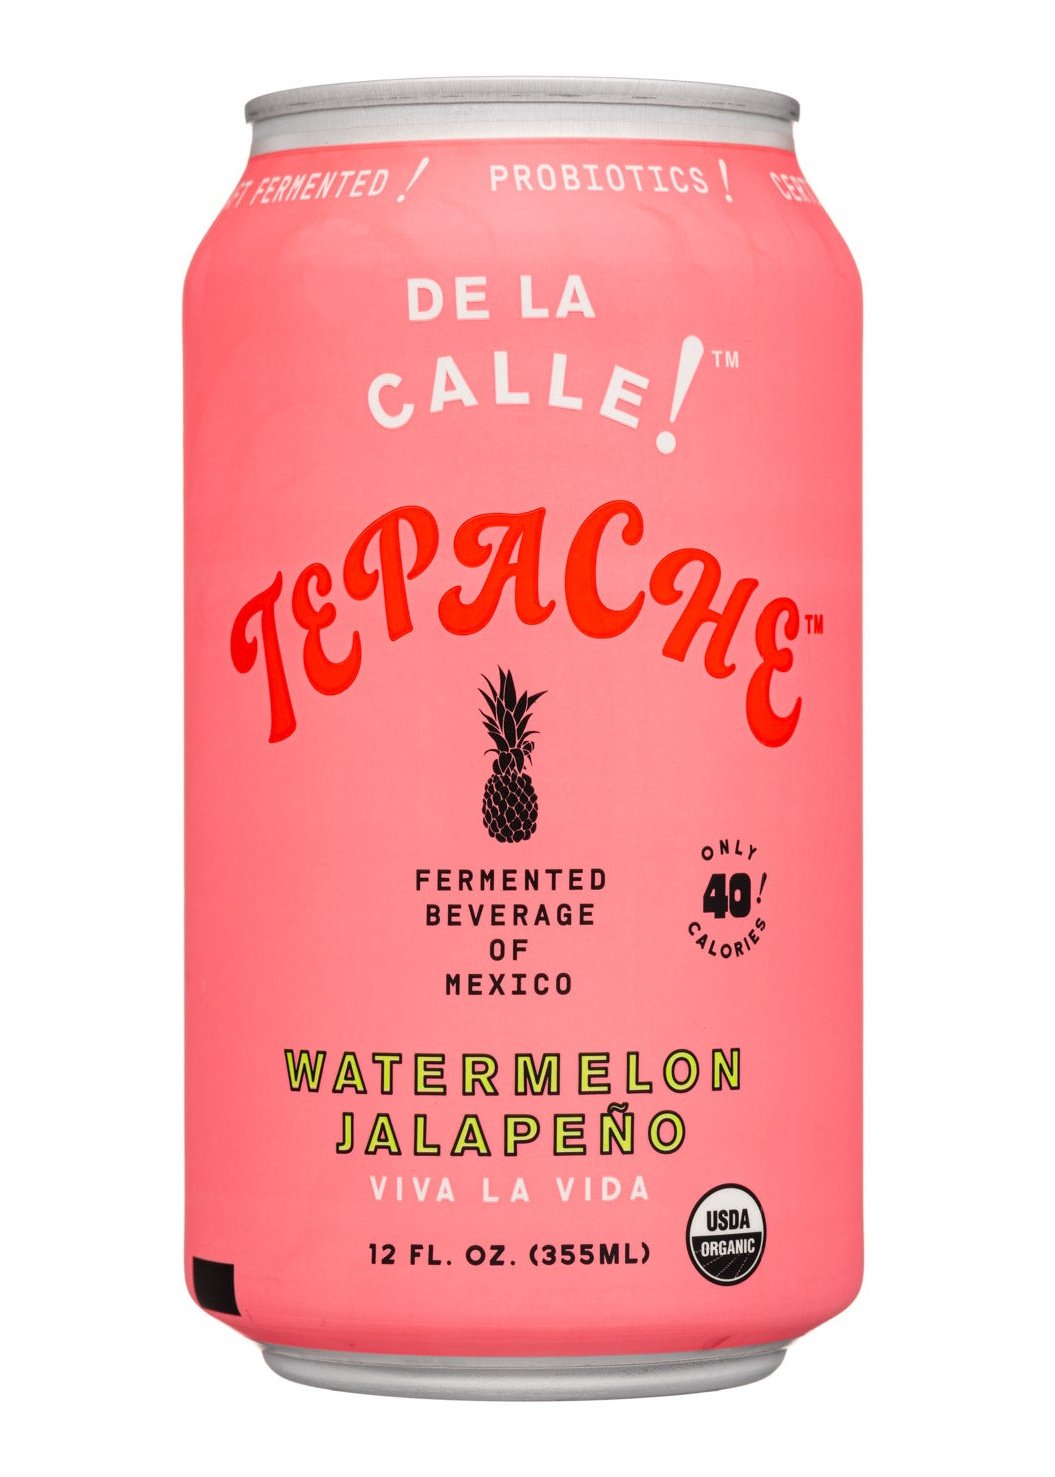 DE LA CALLE Tepache Viva La Vida Watermelon Jalapeño